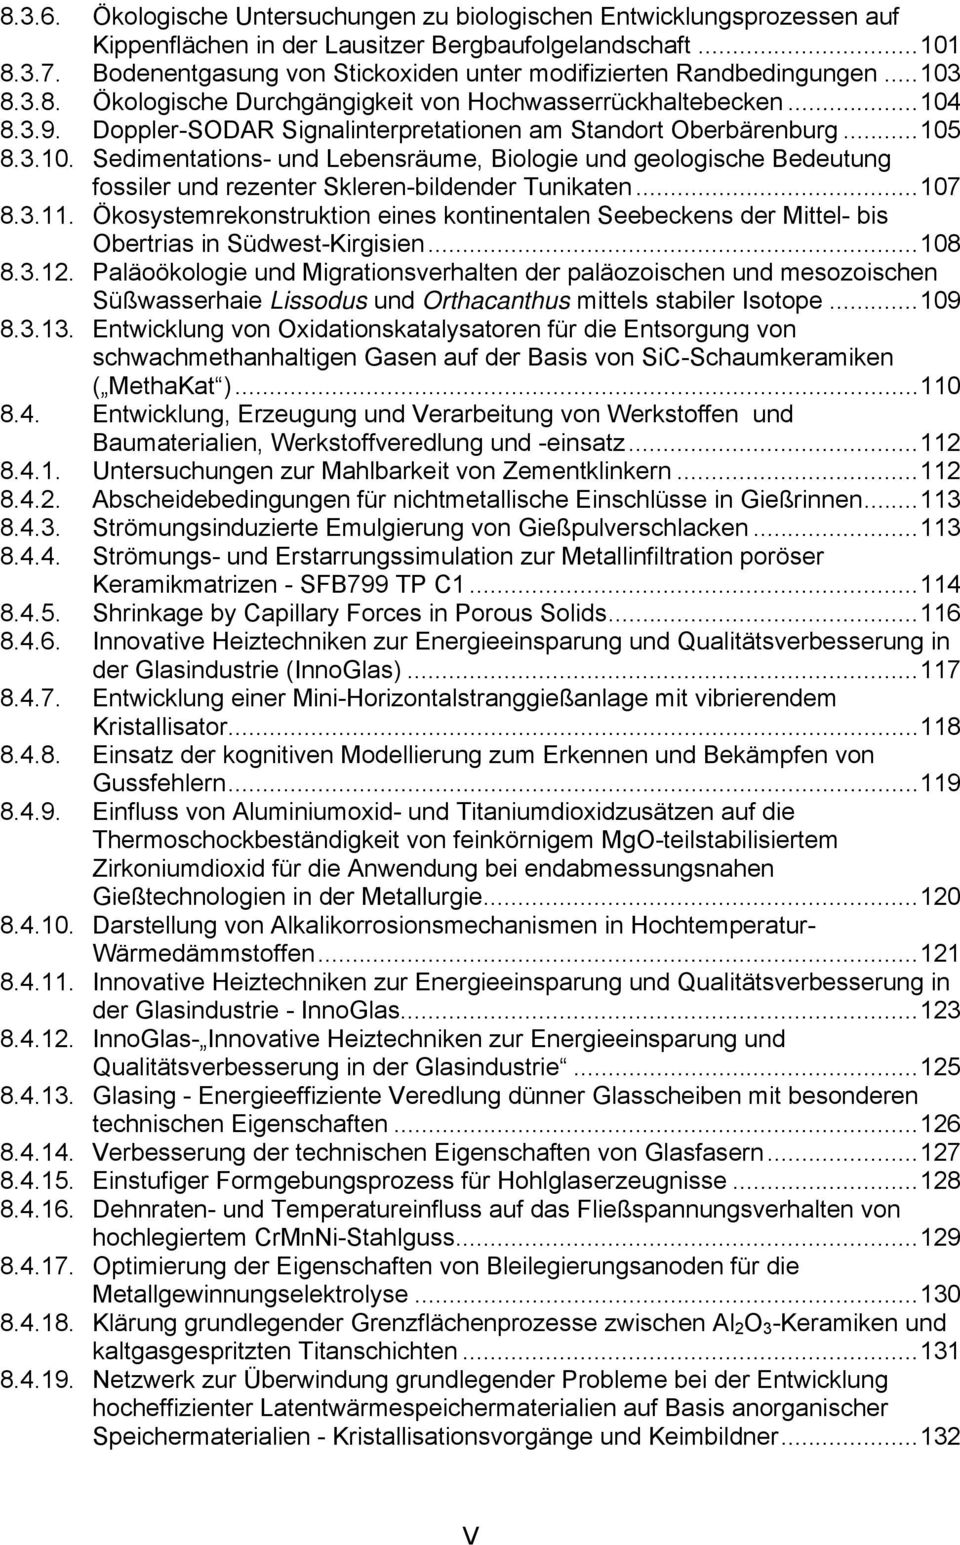 Doppler-SODAR Signalinterpretationen am Standort Oberbärenburg...105 8.3.10. Sedimentations- und Lebensräume, Biologie und geologische Bedeutung fossiler und rezenter Skleren-bildender Tunikaten.